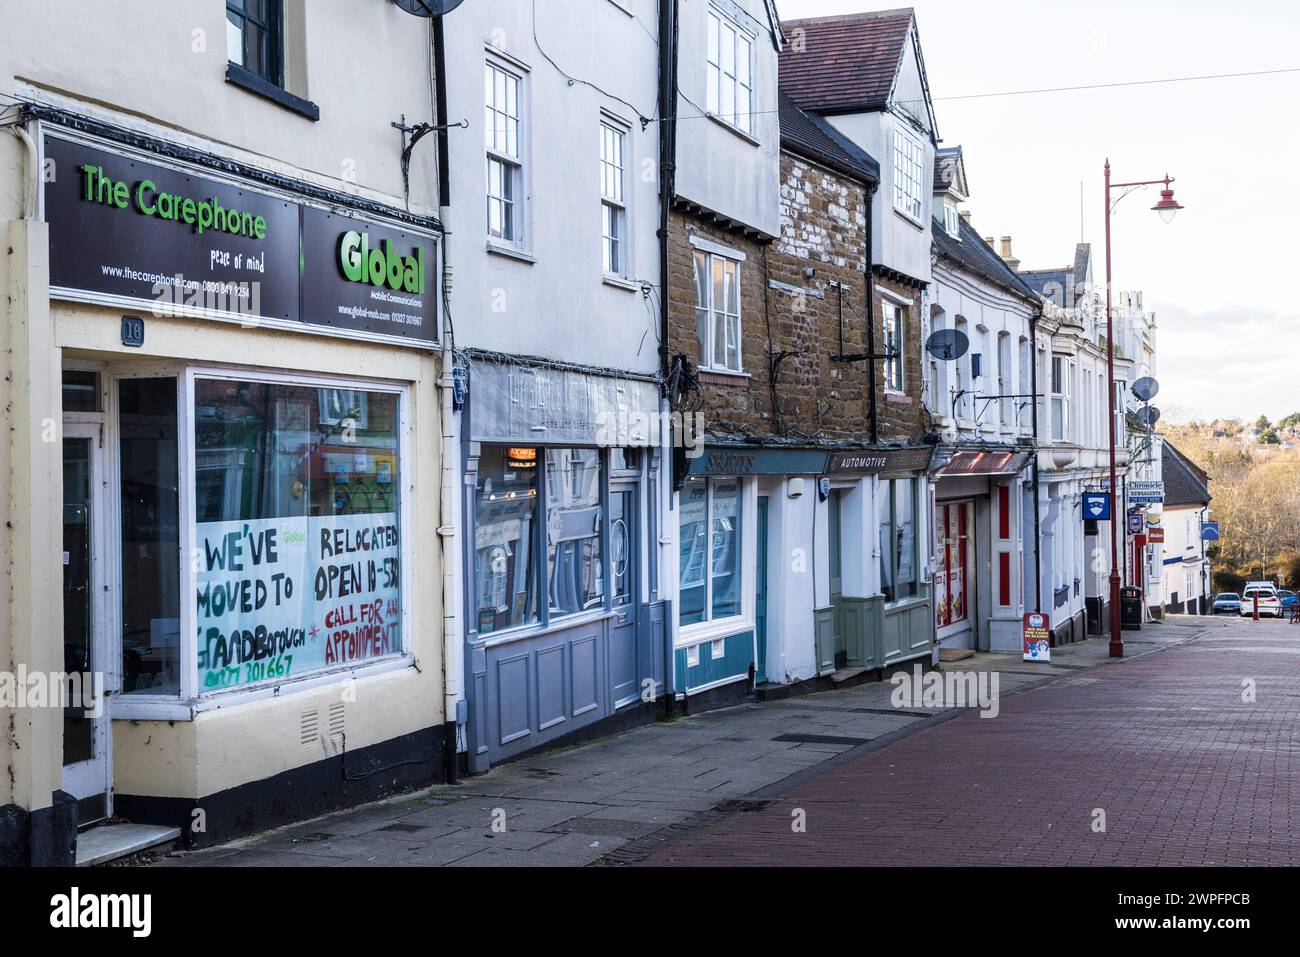 Fila di negozi con uno chiuso per il trasferimento, Daventry, Inghilterra, Regno Unito Foto Stock